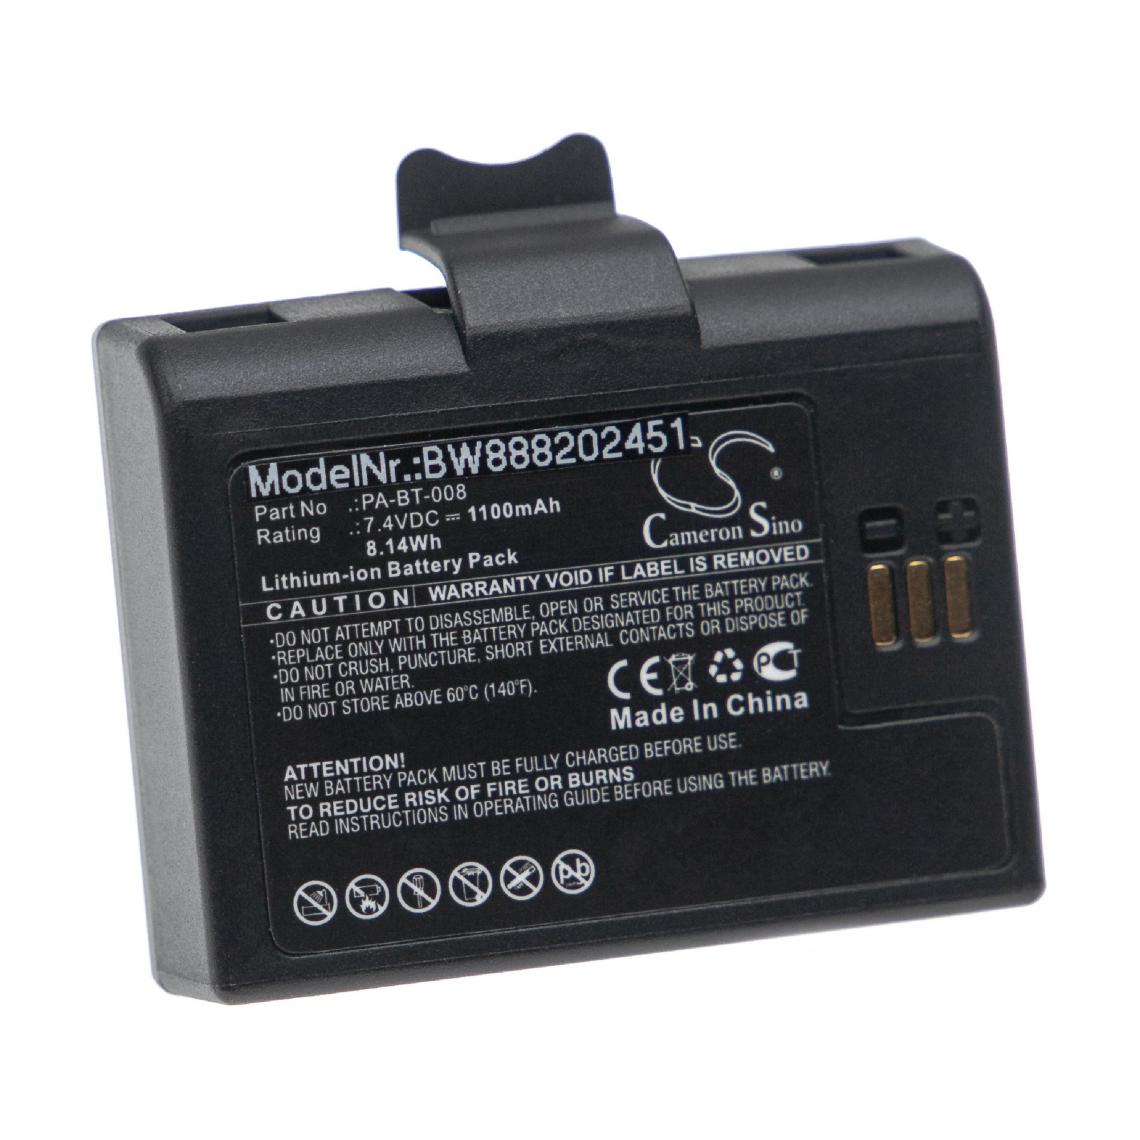 Vhbw - vhbw Batterie remplacement pour Brother PA-BT-008 pour imprimante, scanner, imprimante d'étiquettes (1100mAh, 7,4V, Li-ion) - Imprimante Jet d'encre